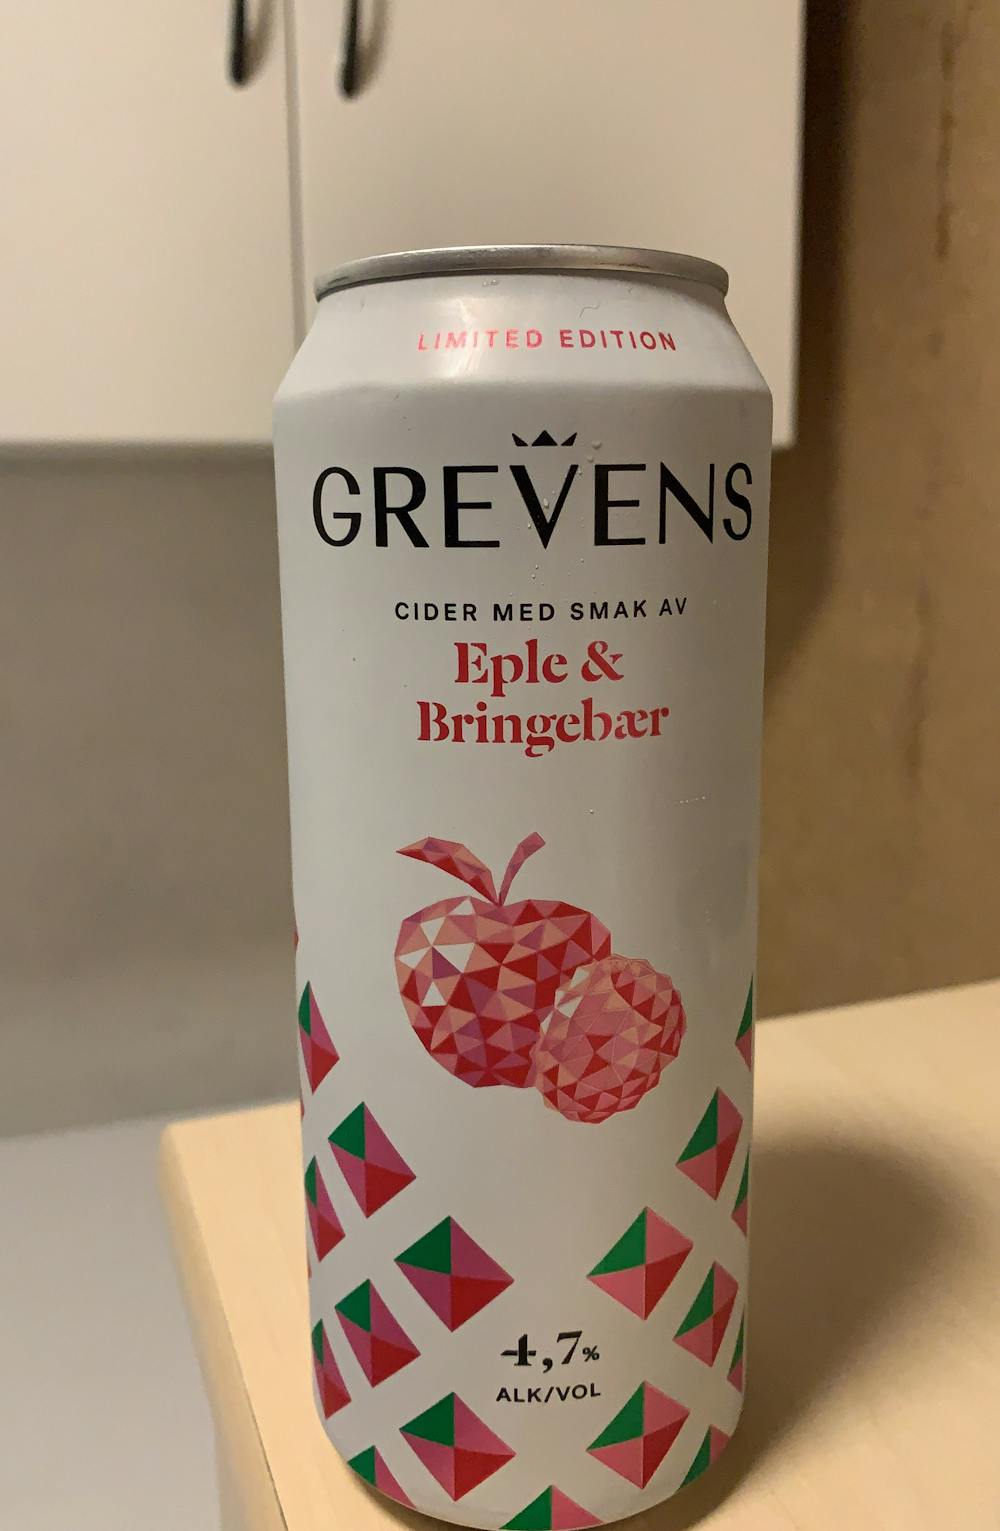 Eple & bringebær, Grevens